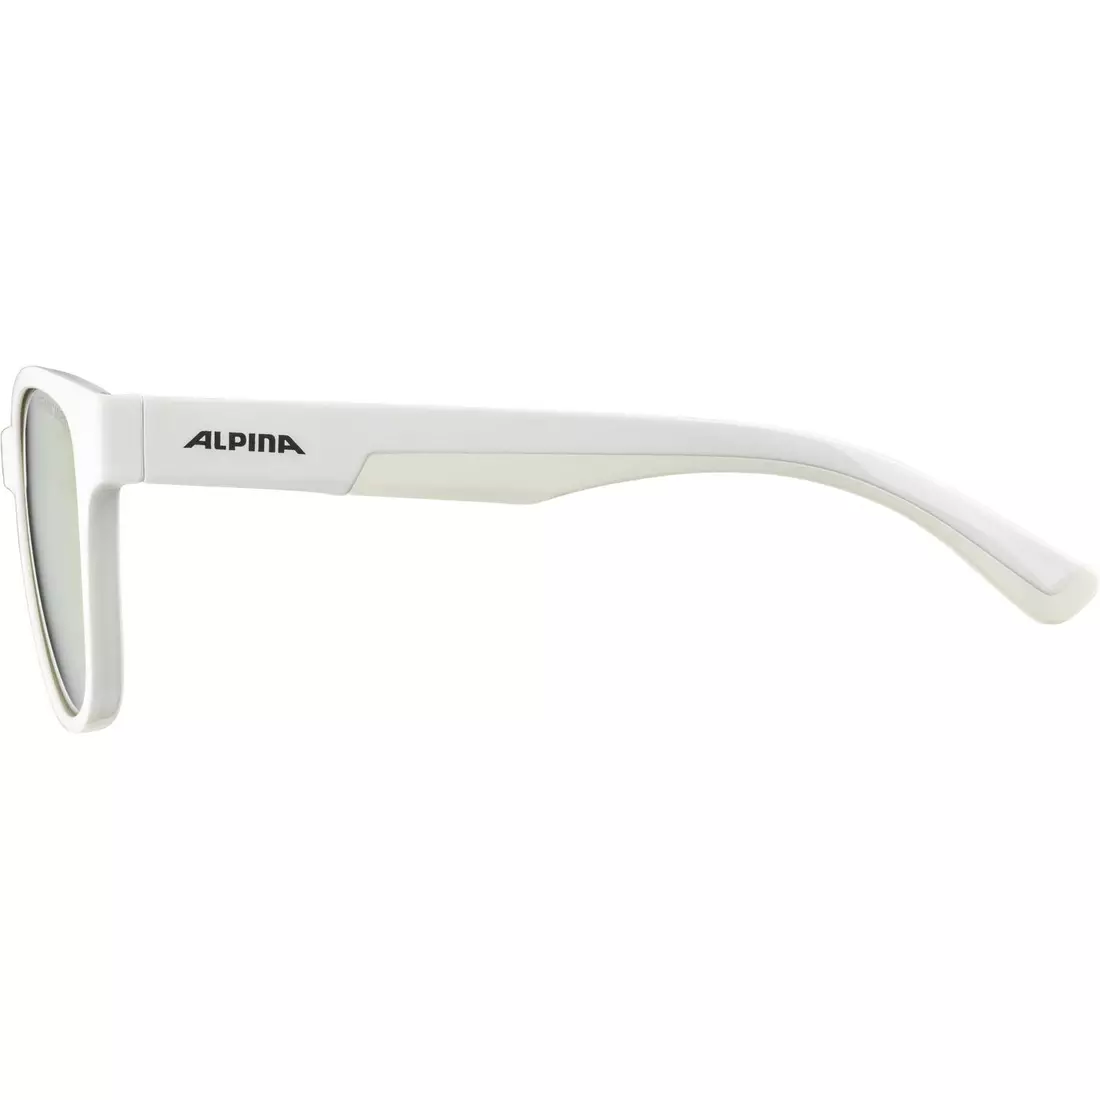 ALPINA FLEXXY COOL KIDS II Fahrrad-/Sportbrille für Kinder, white gloss